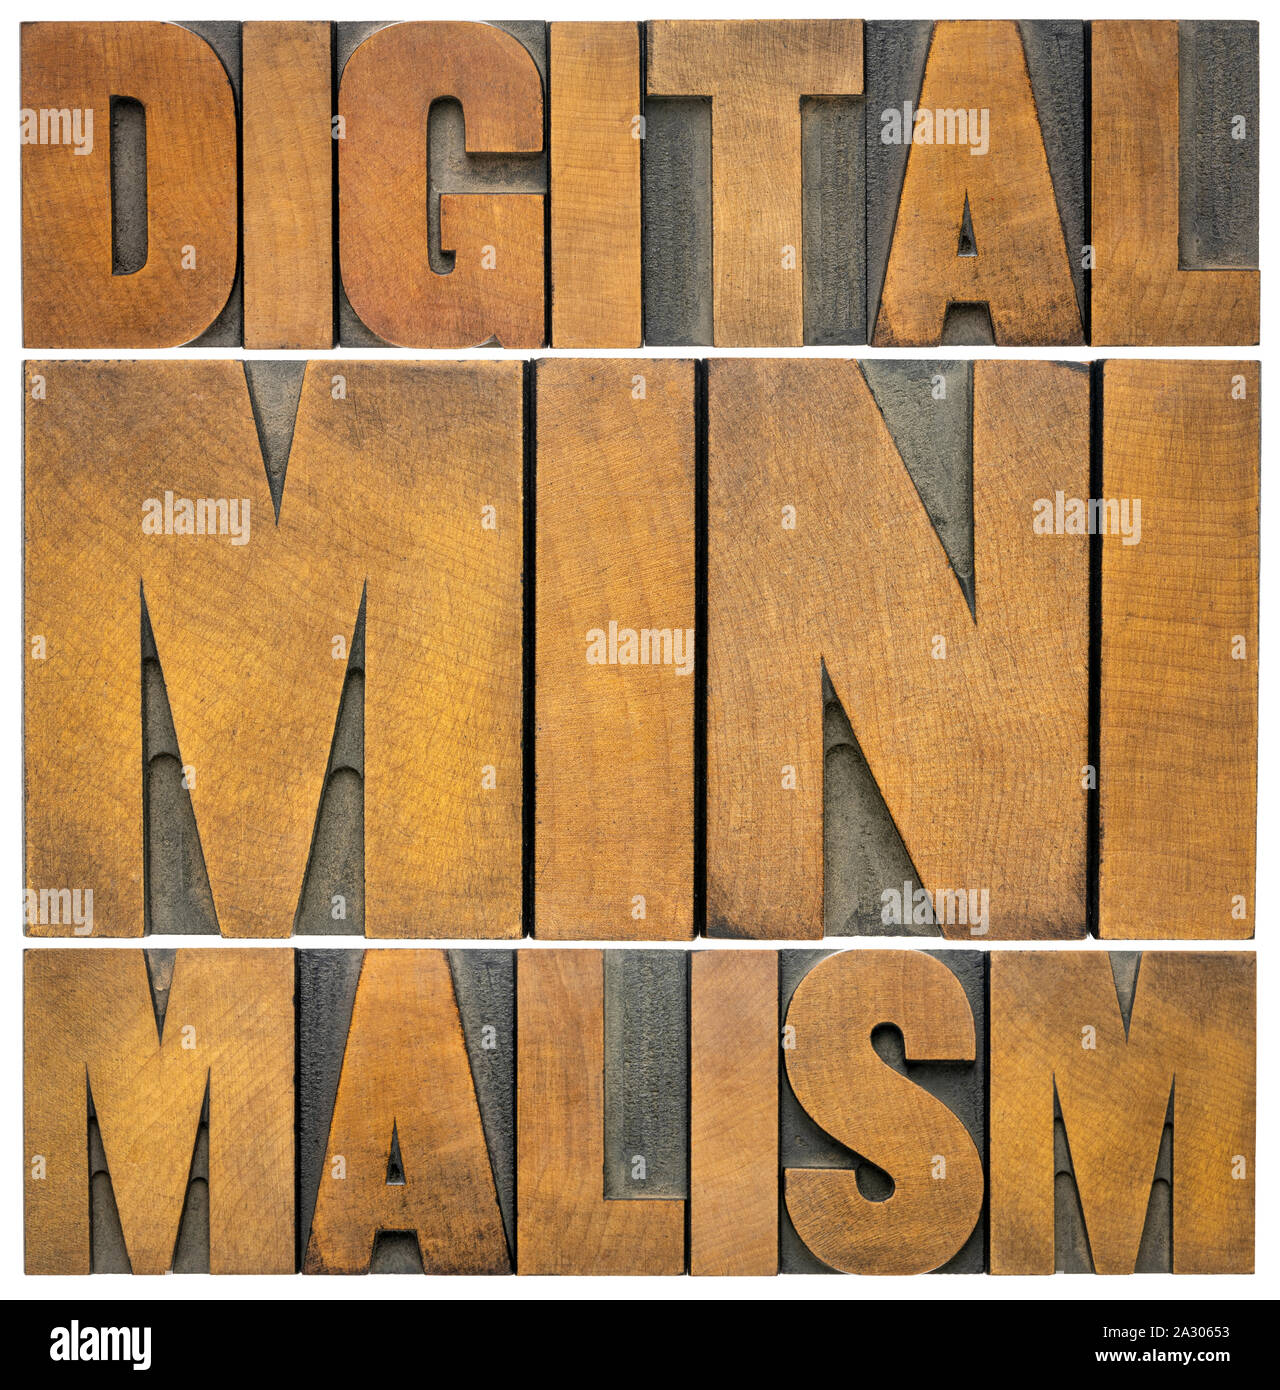 Le minimalisme numérique concept - mot isolé résumé dans la typographie type de blocs, ce qui limite le temps en ligne et social media concept Banque D'Images